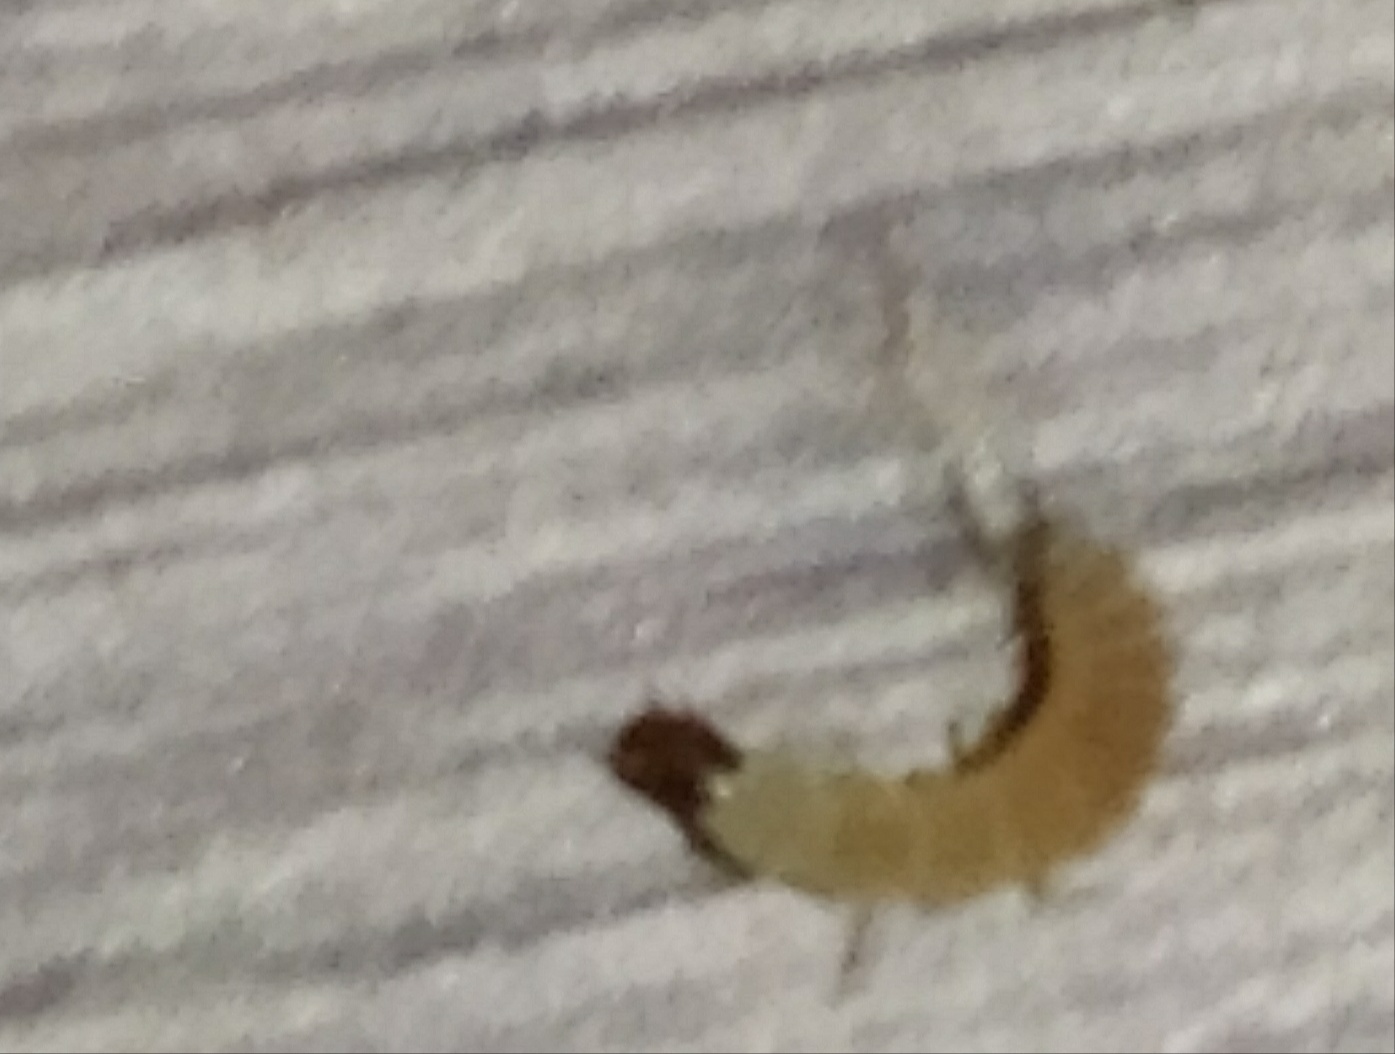 Non riesco a riconoscere questa larva: probabile Malachiidae